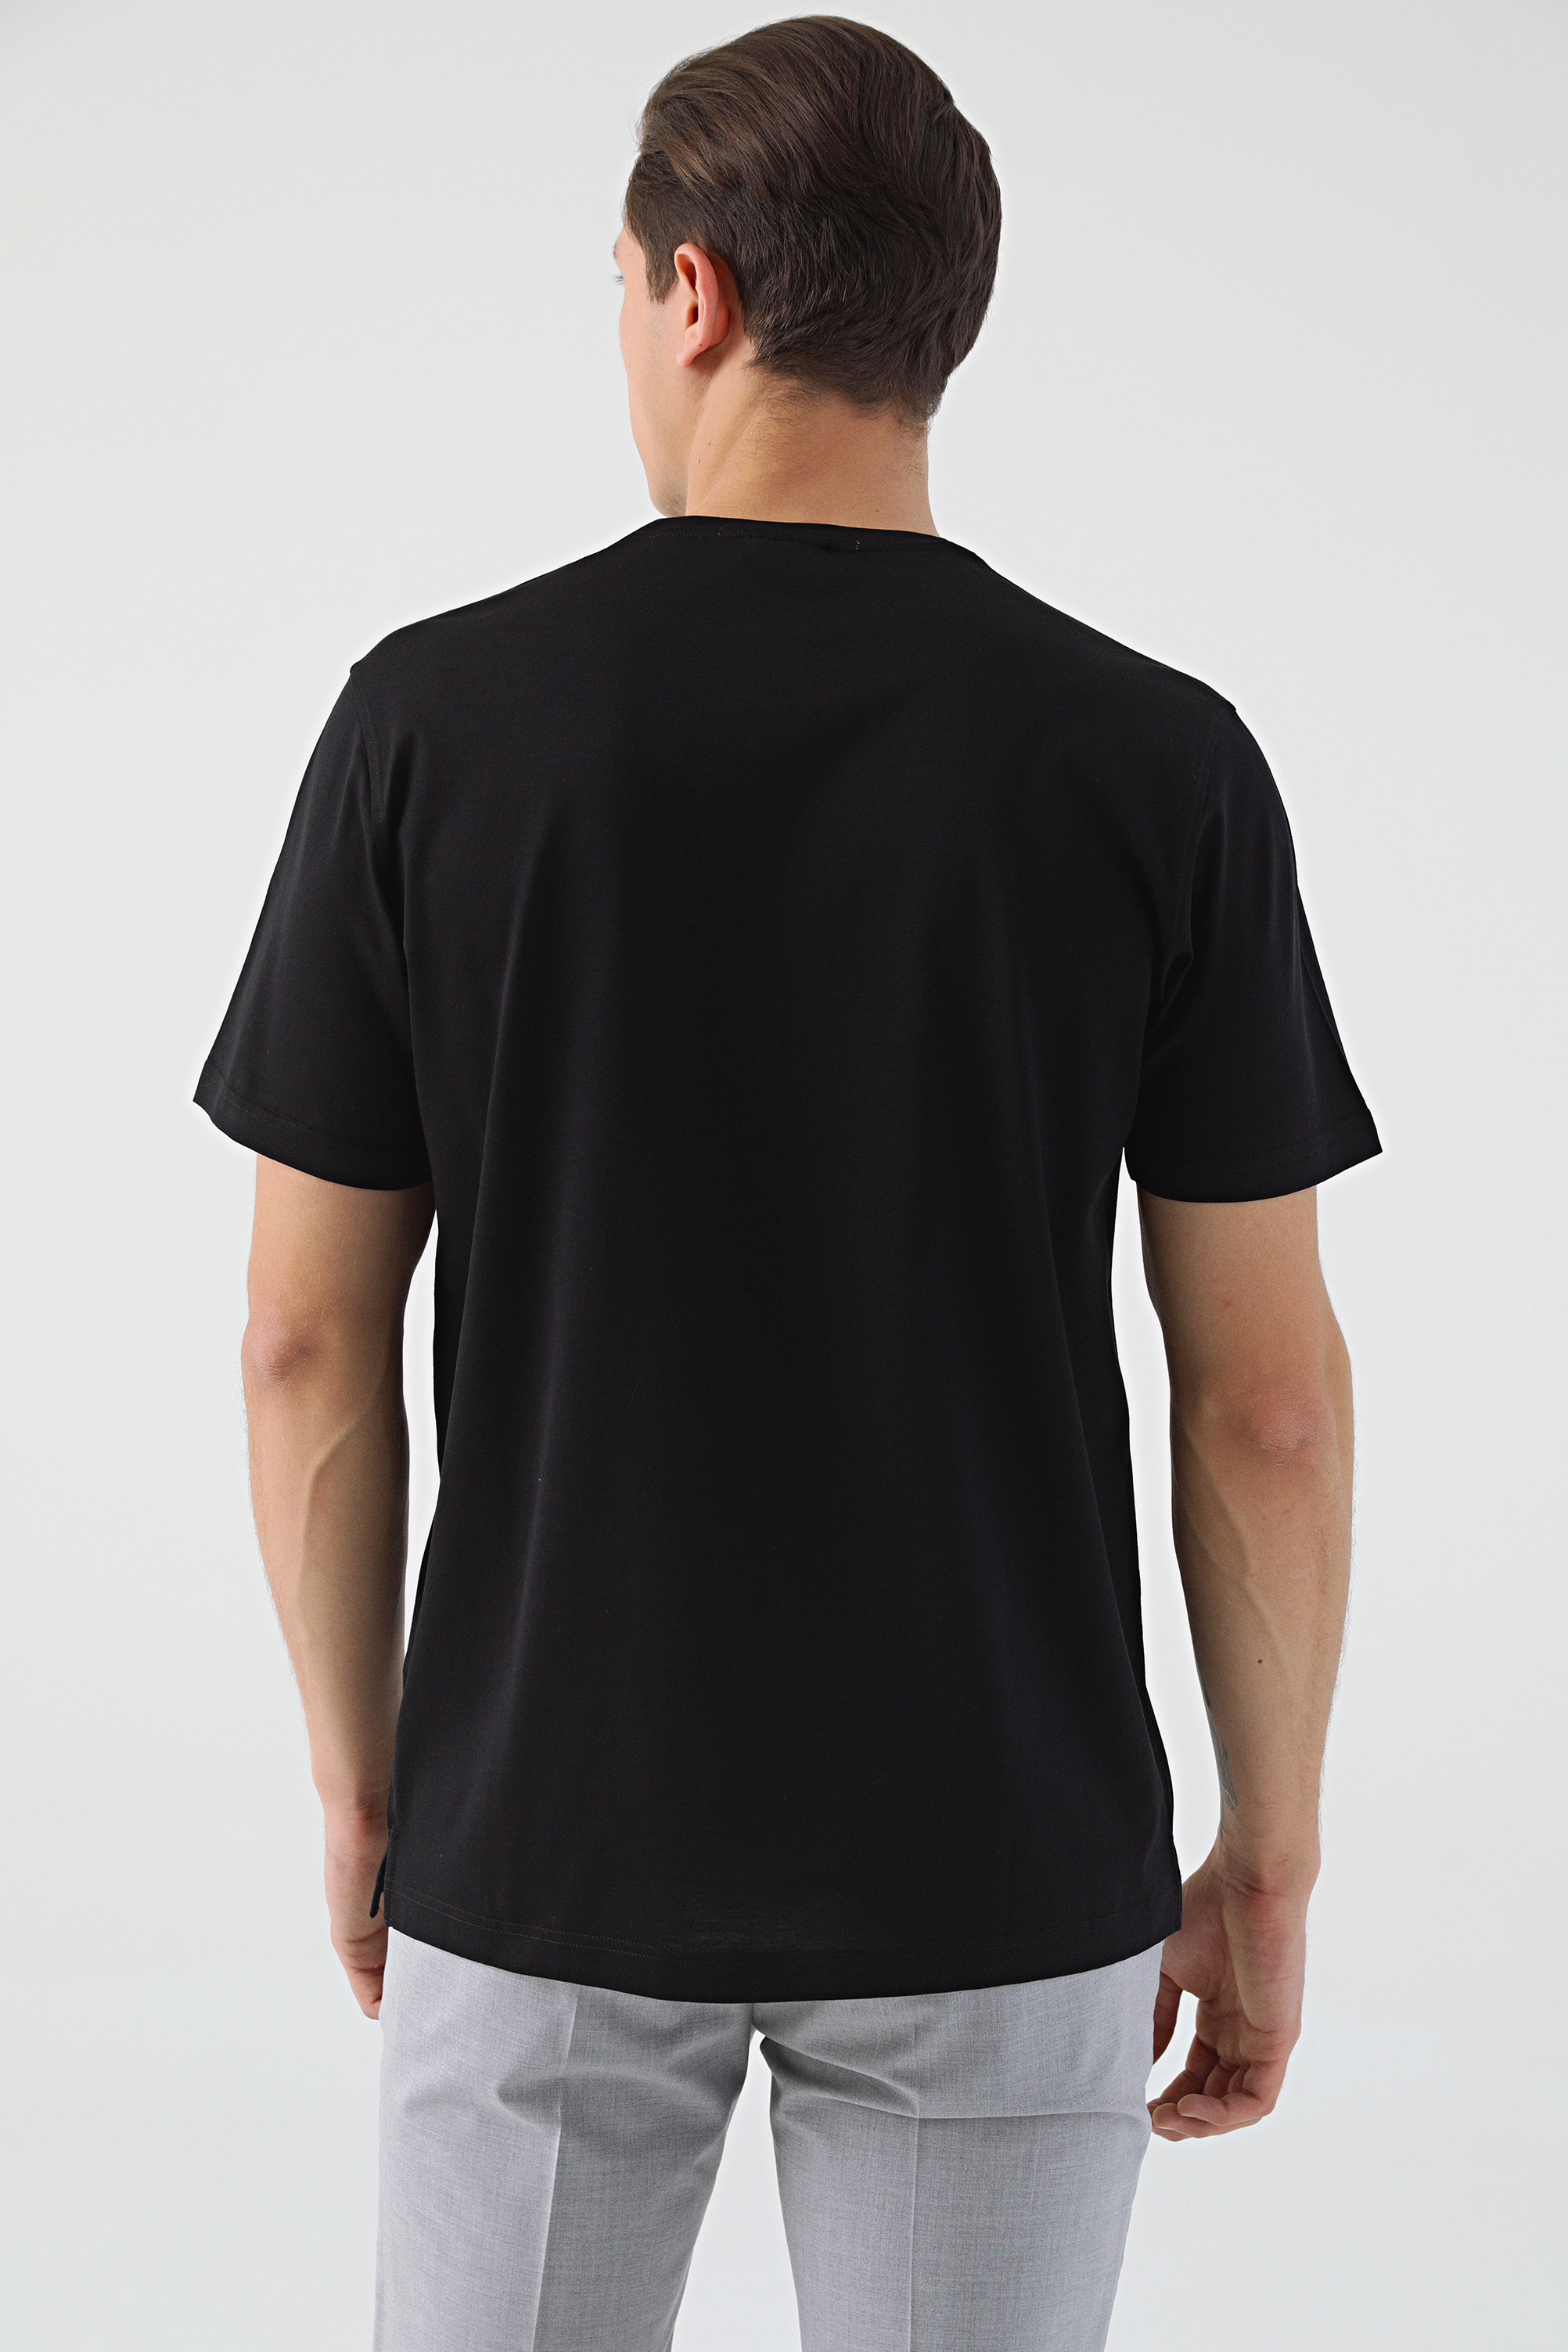 Damat Tween Damat Siyah T-shirt. 4